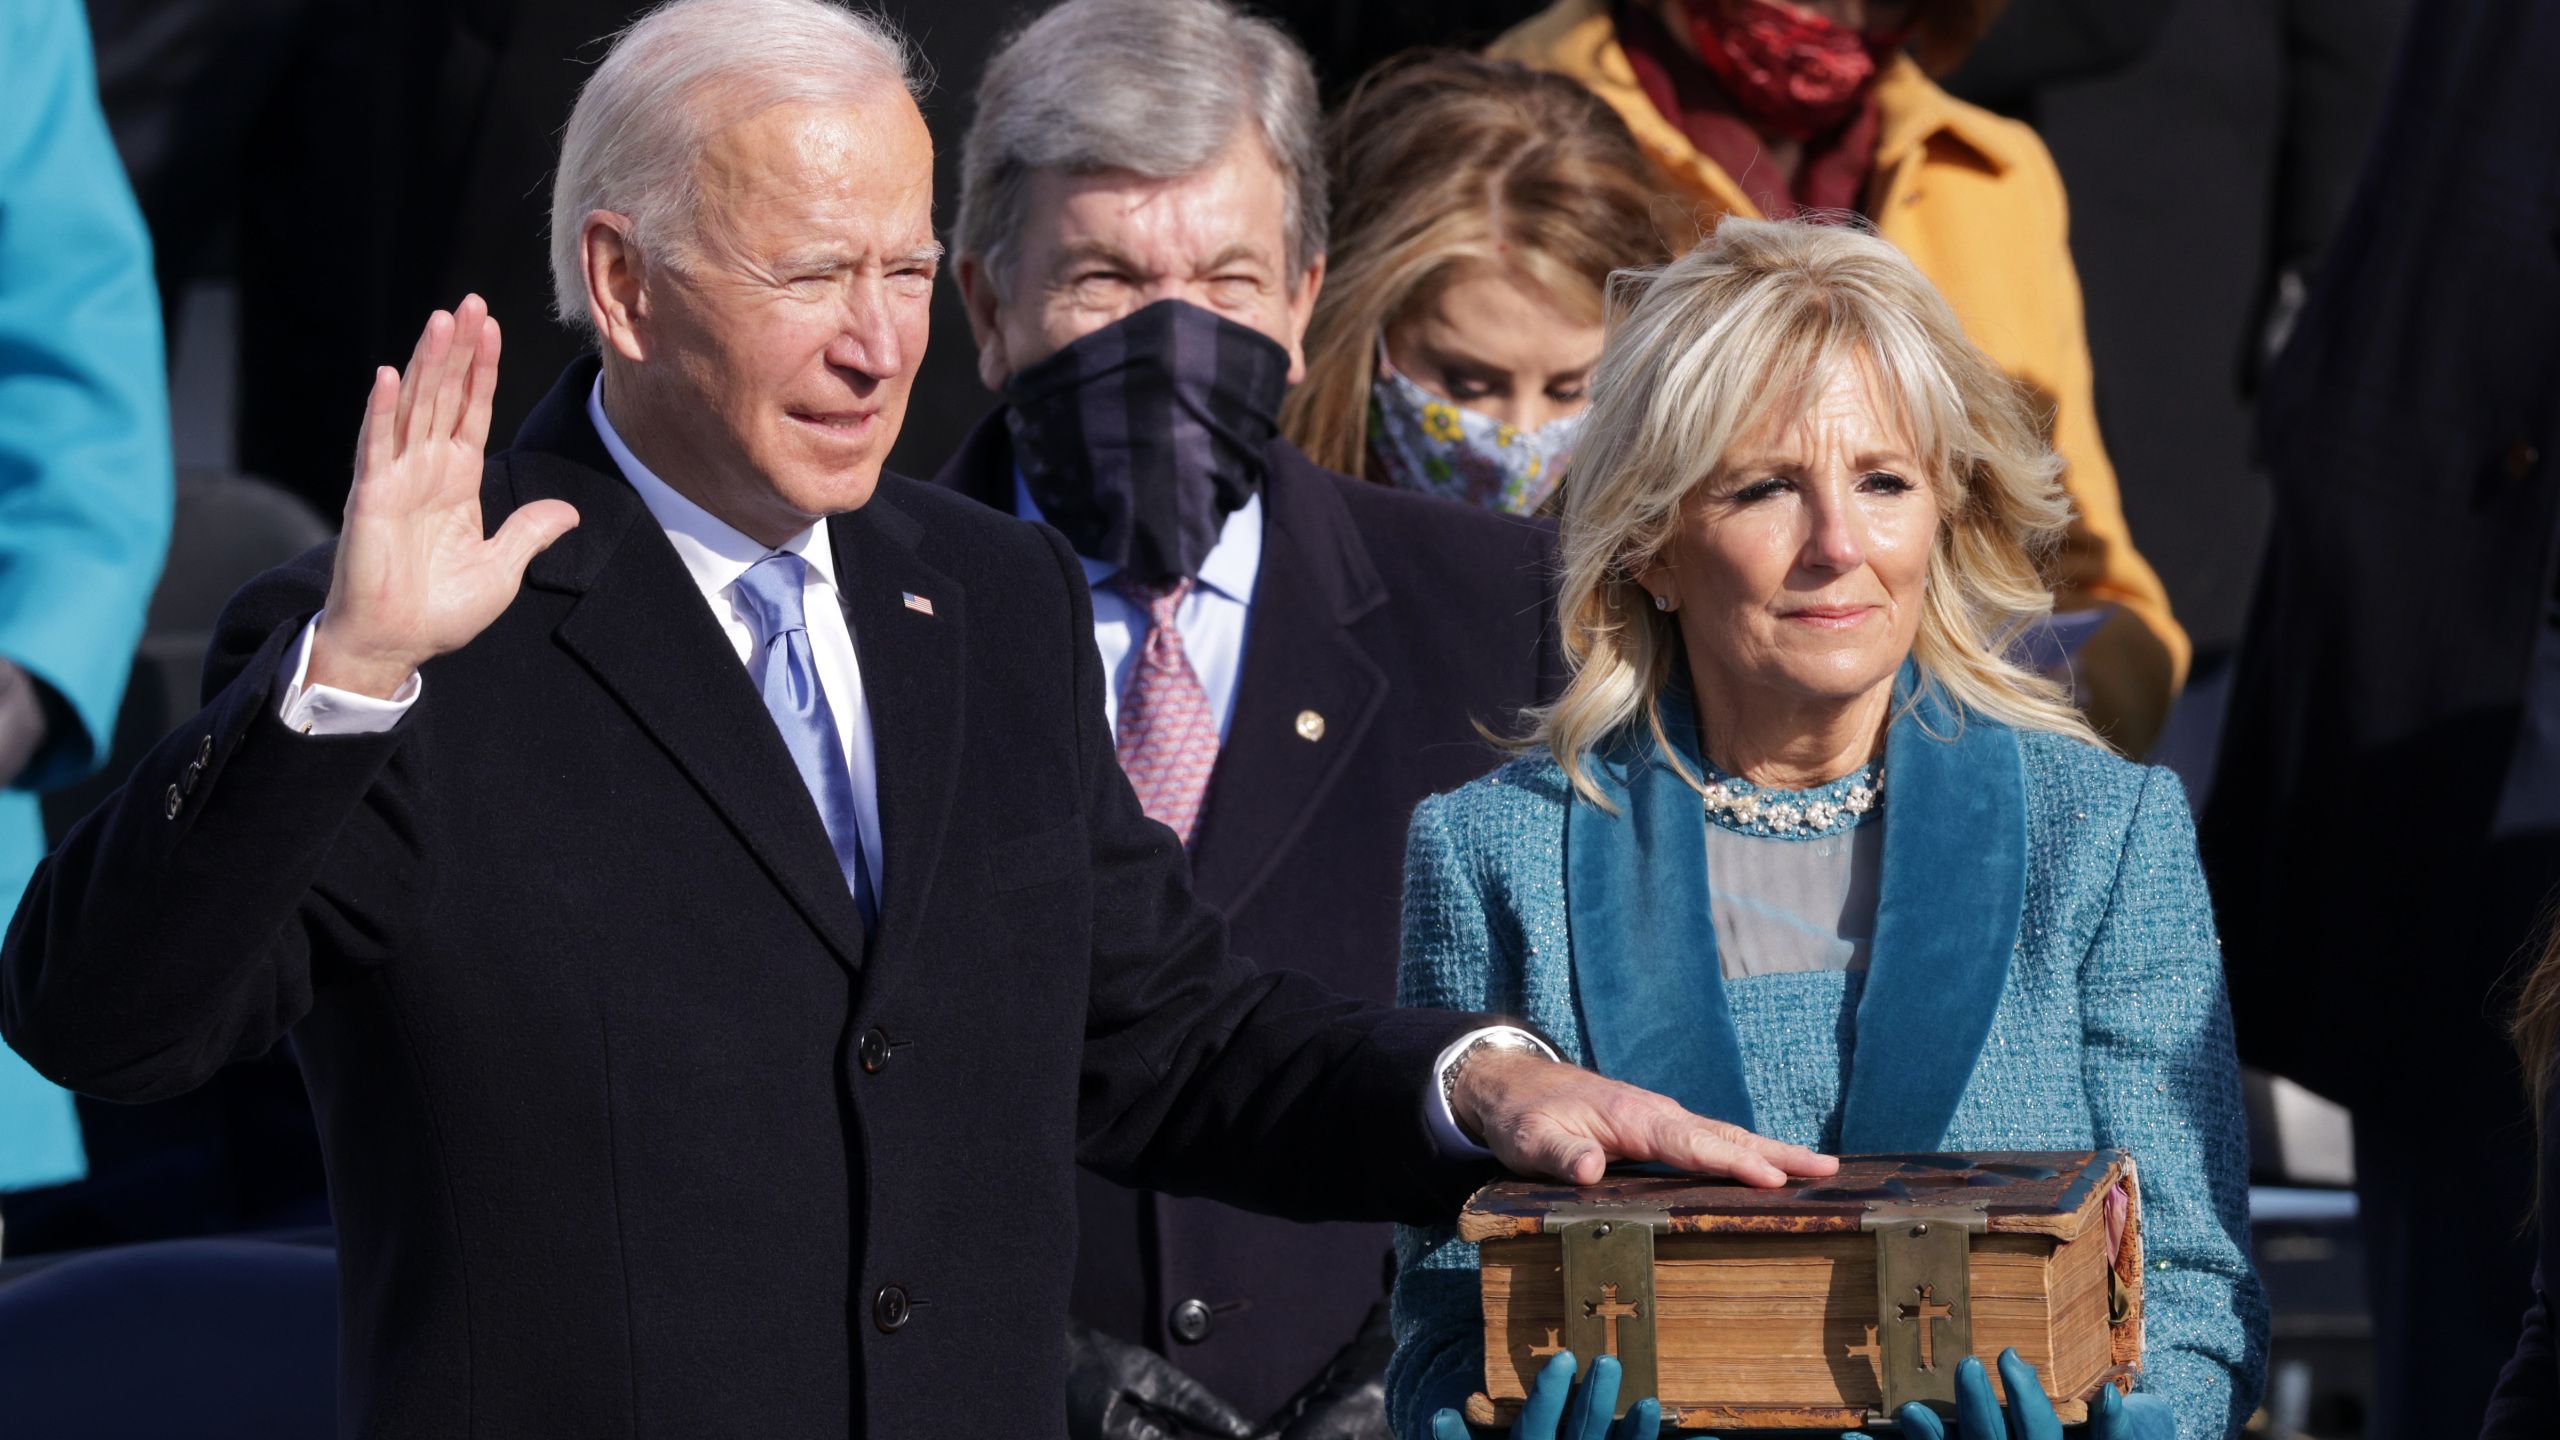 PHOTOS: Image from Joe Biden and Kamala Harris Inauguration. KFOR.com Oklahoma City